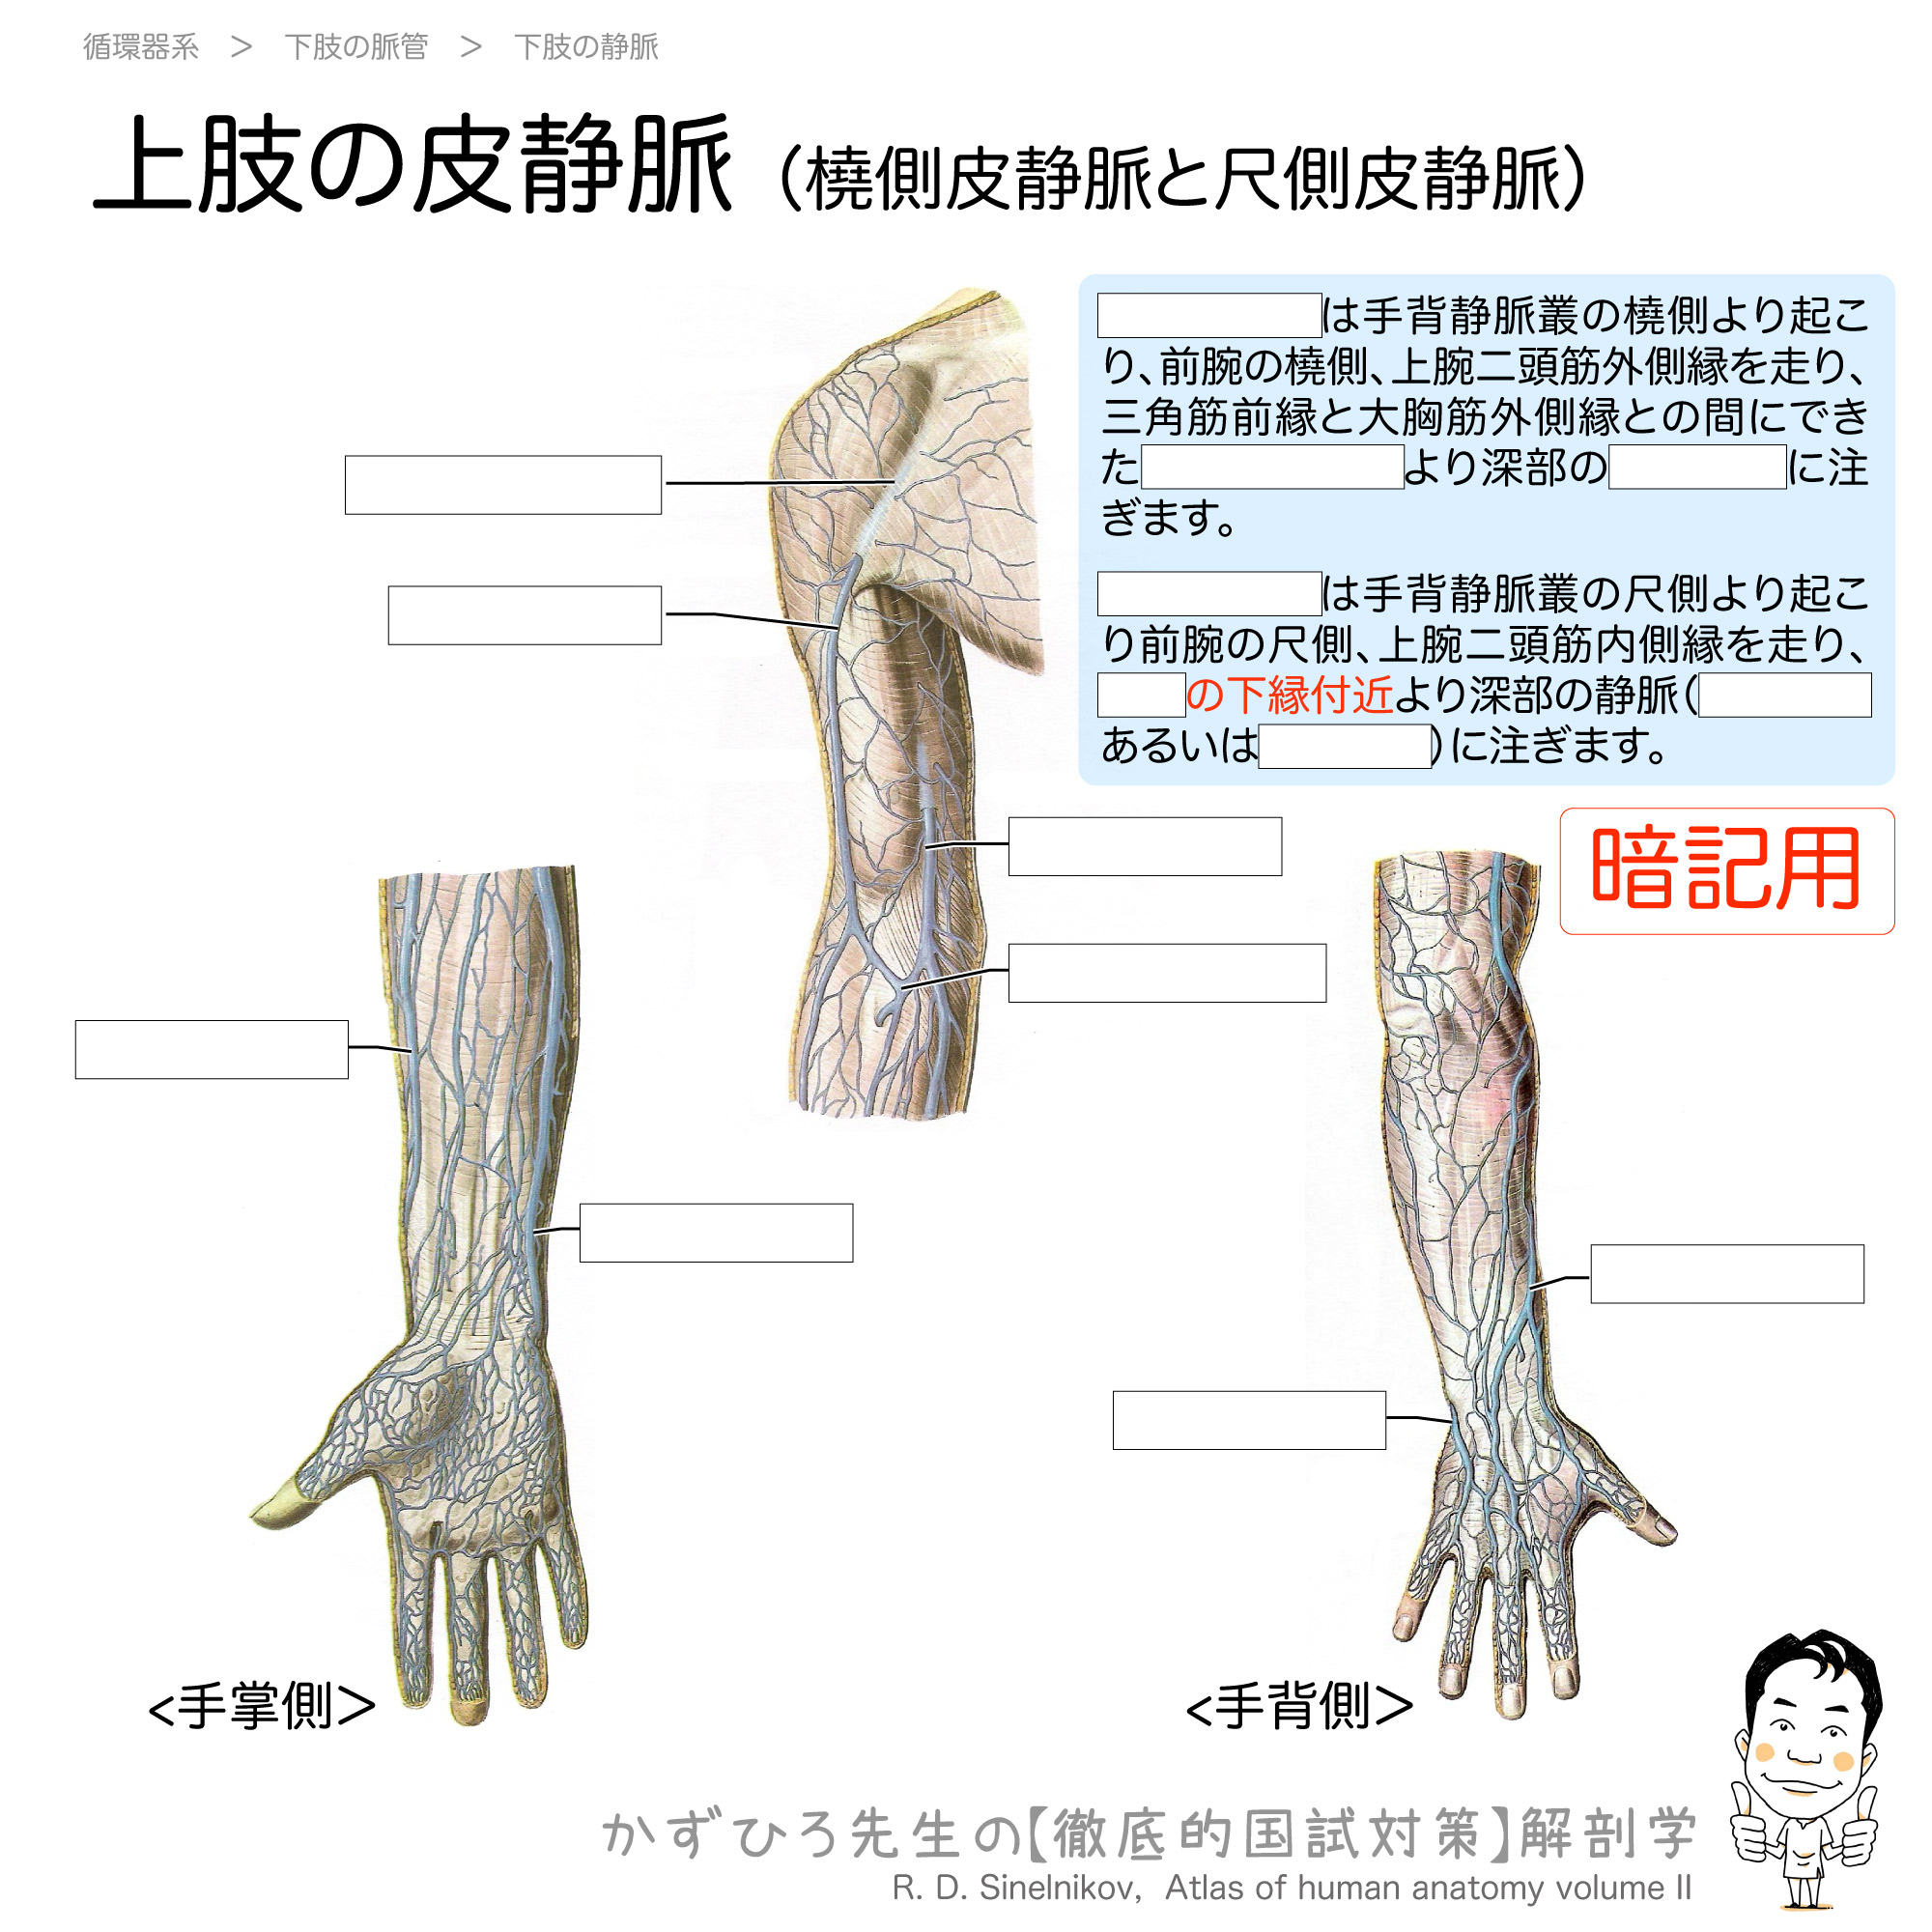 橈側皮静脈と尺側皮静脈 上肢の皮静脈 徹底的解剖学